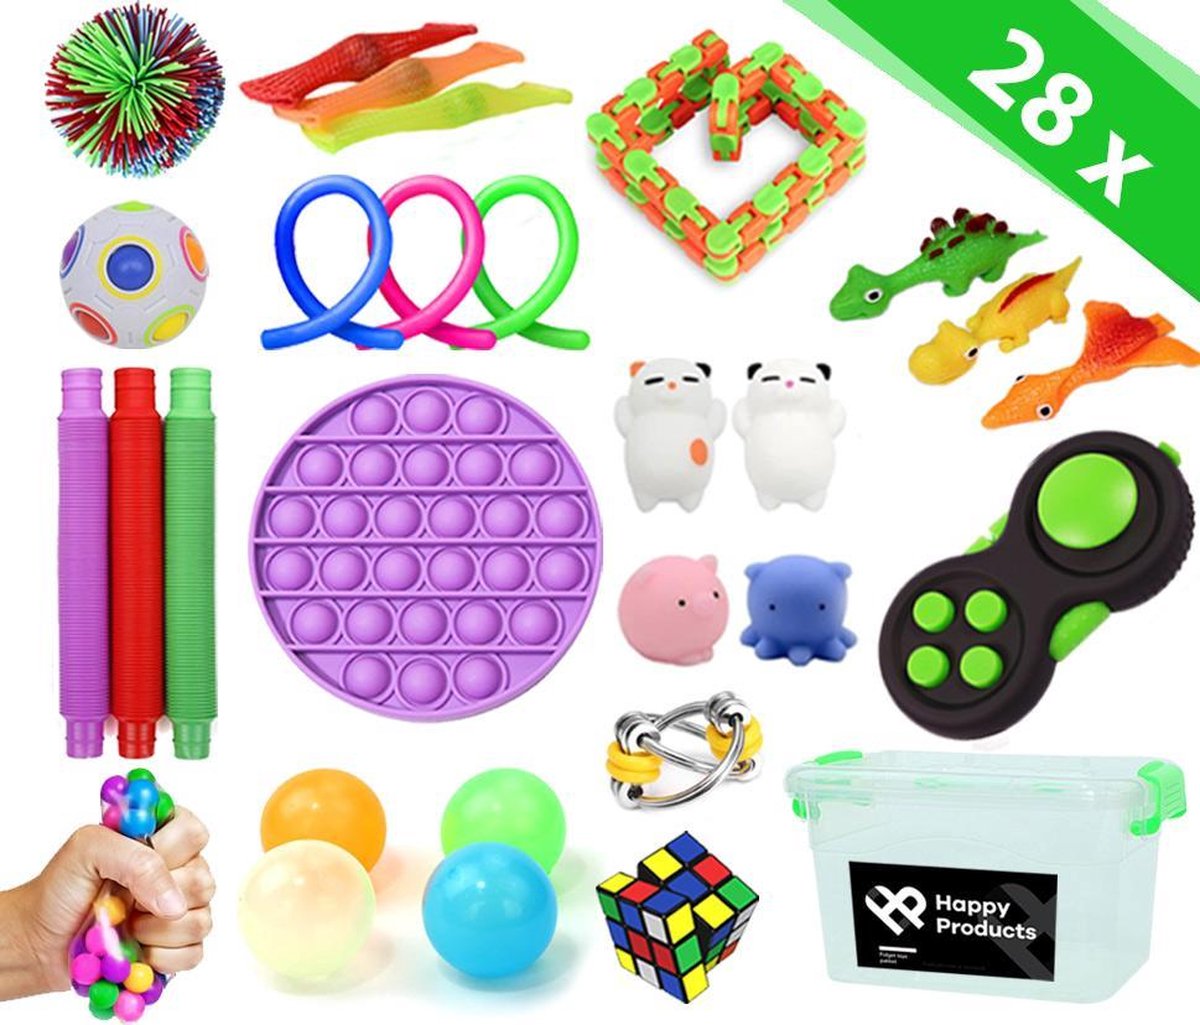 Fidget toys pakket - 28 stuks fidgets inclusief pop it - sticky balls - simple dimple - globbles - squishy dieren - mochi squishies - sinterklaas cadeautjes - Happy products